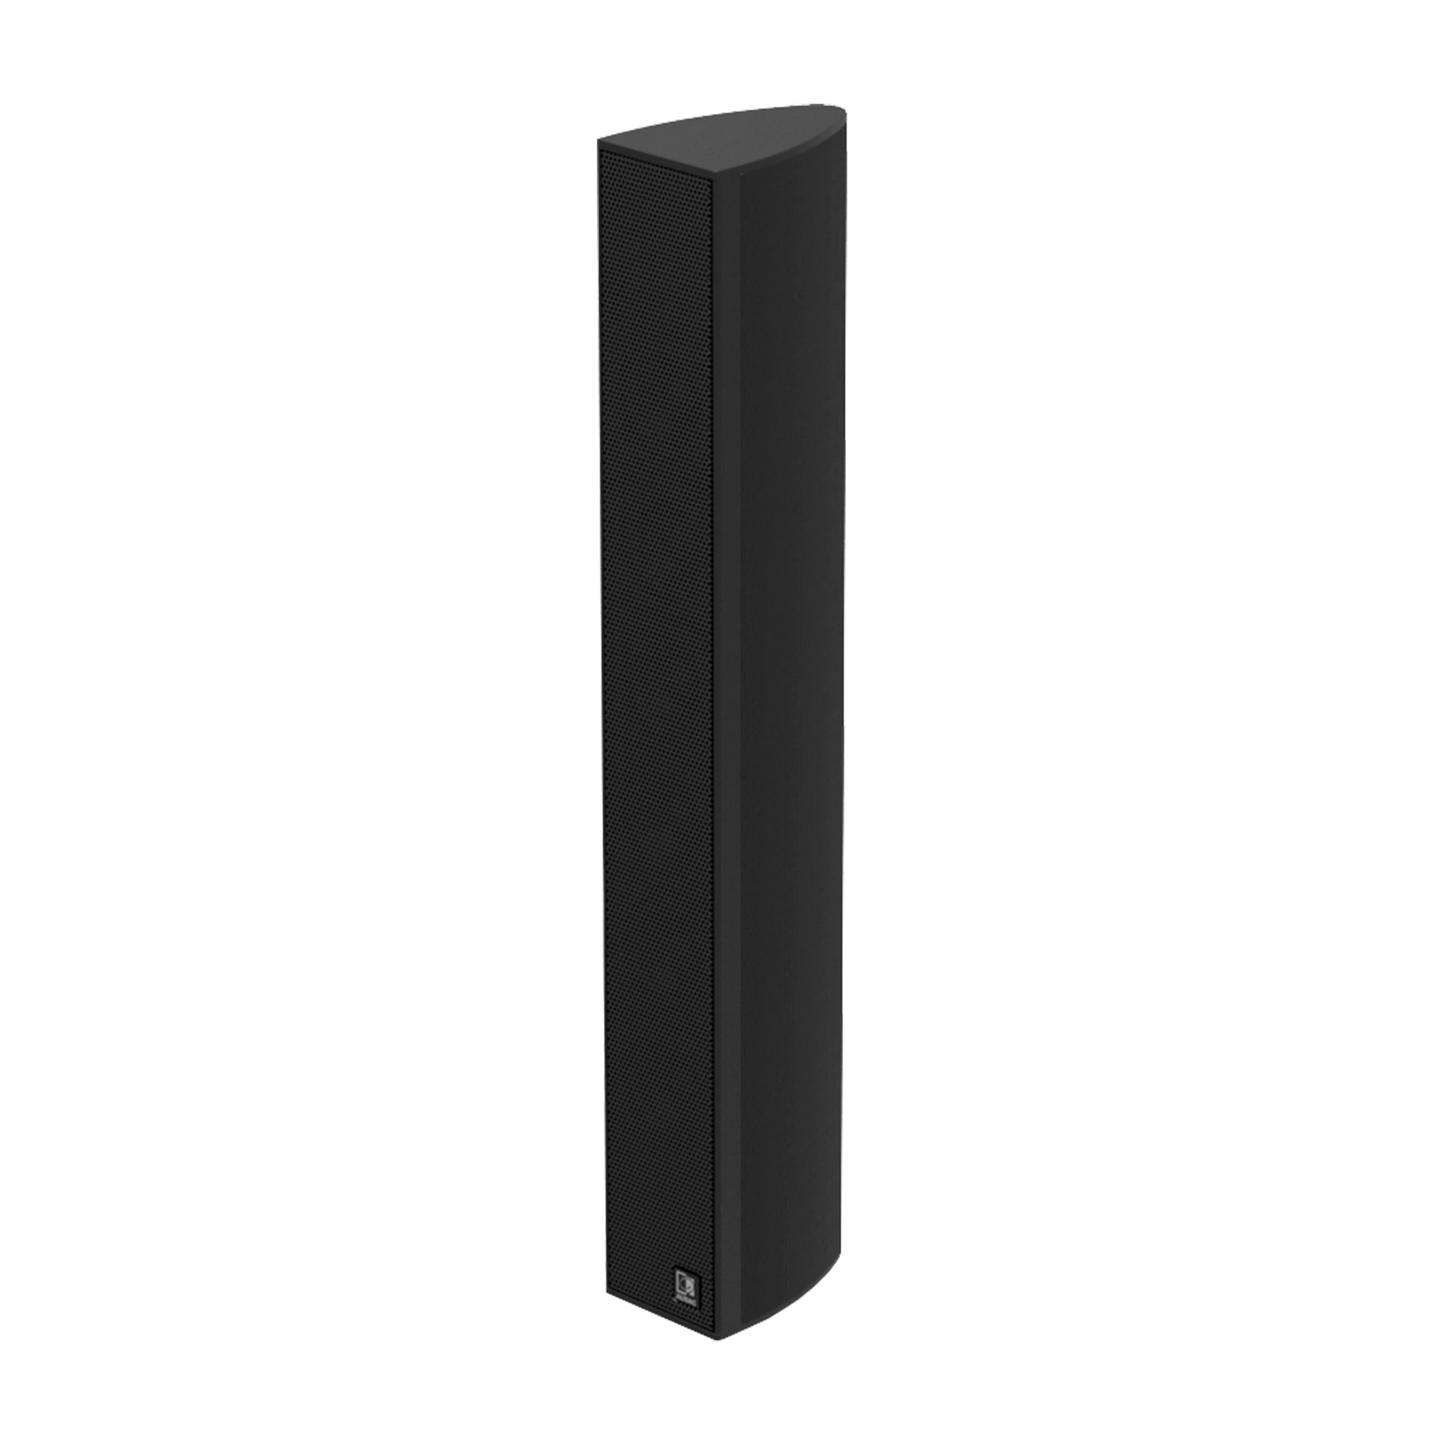 KYRA6 6 x 2" Design column speaker